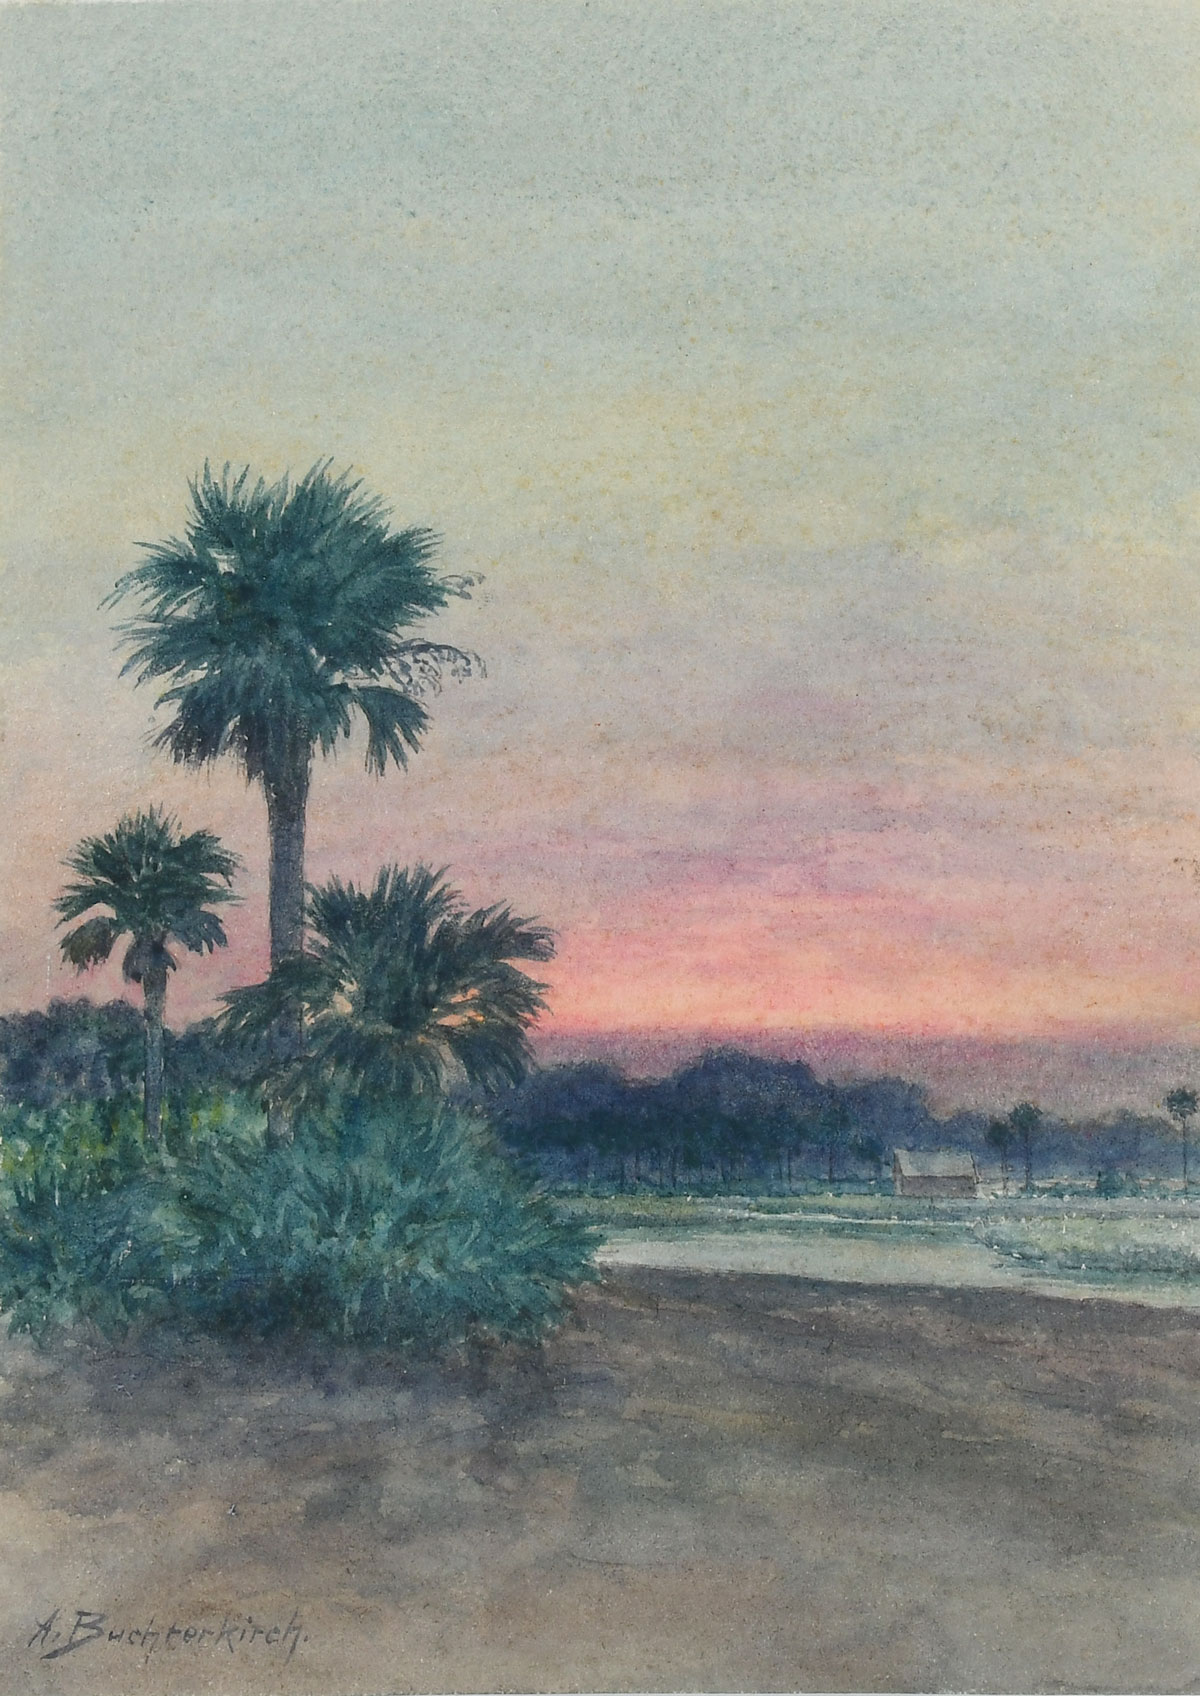 BUTCHERKIRCH, Armin (1859-1919): Sunset